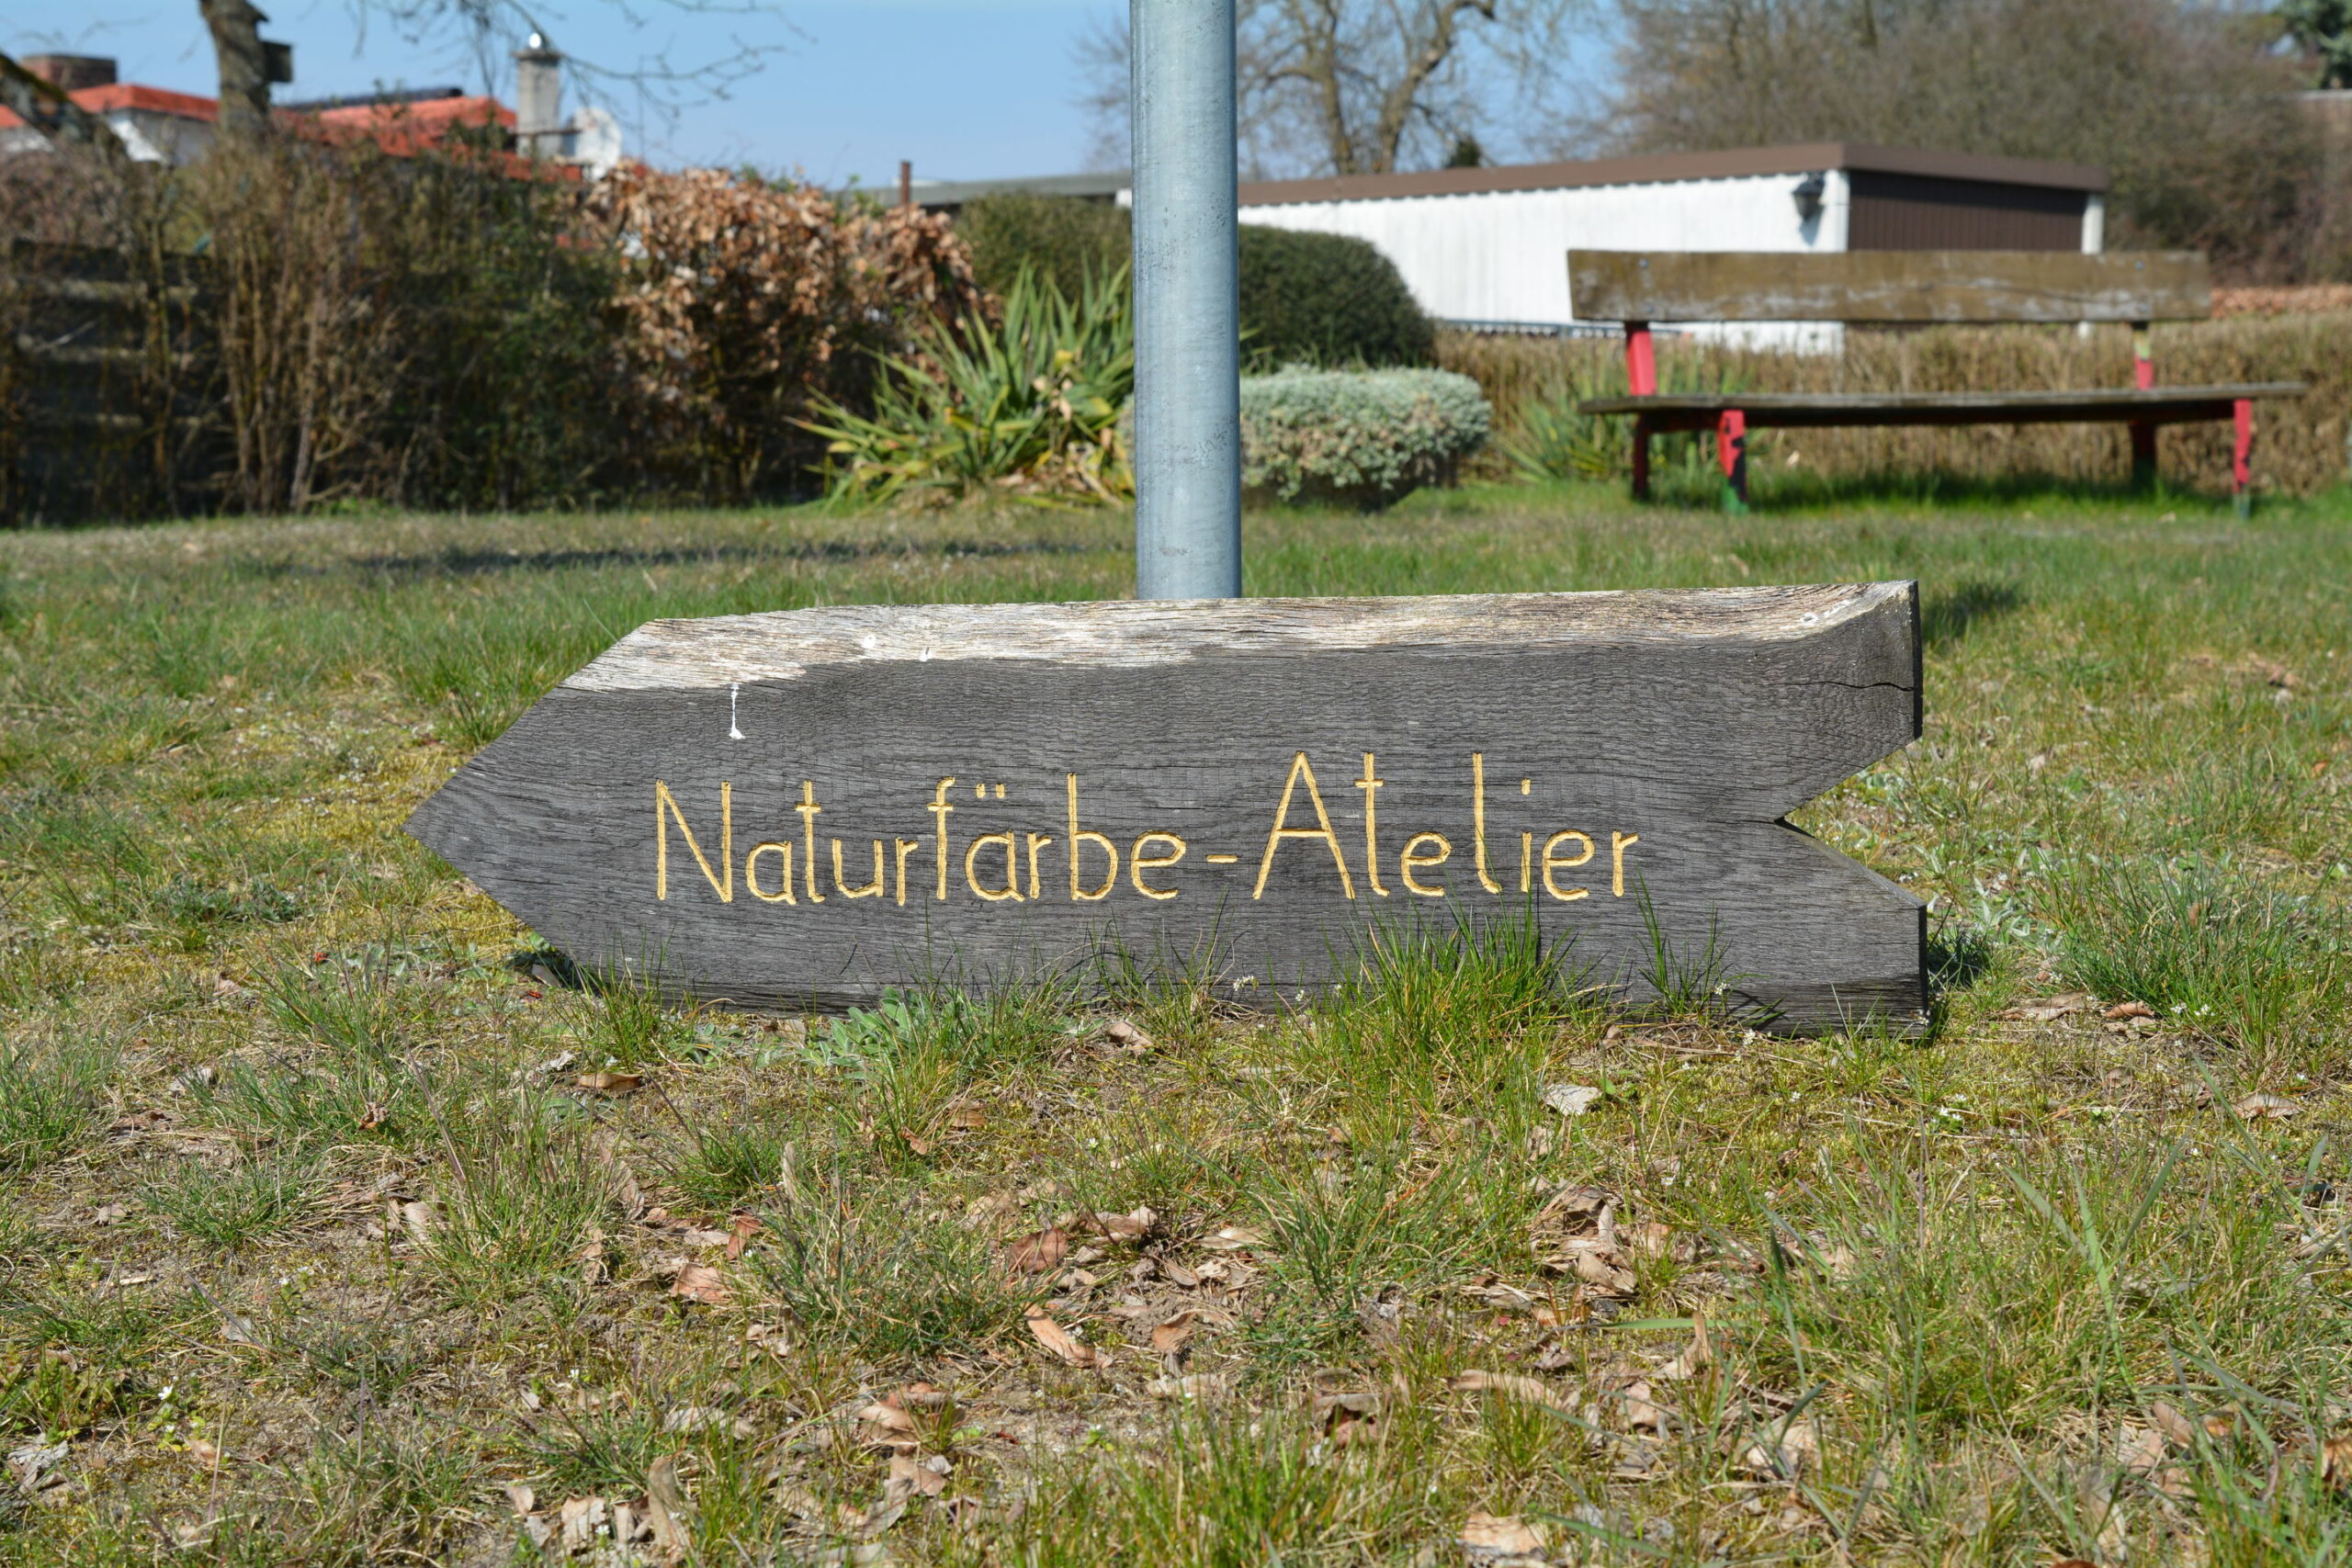 Naturfärbe Atelier Jänisch-Martens, Foto: Anja Warning, Lizenz: Anja Warning